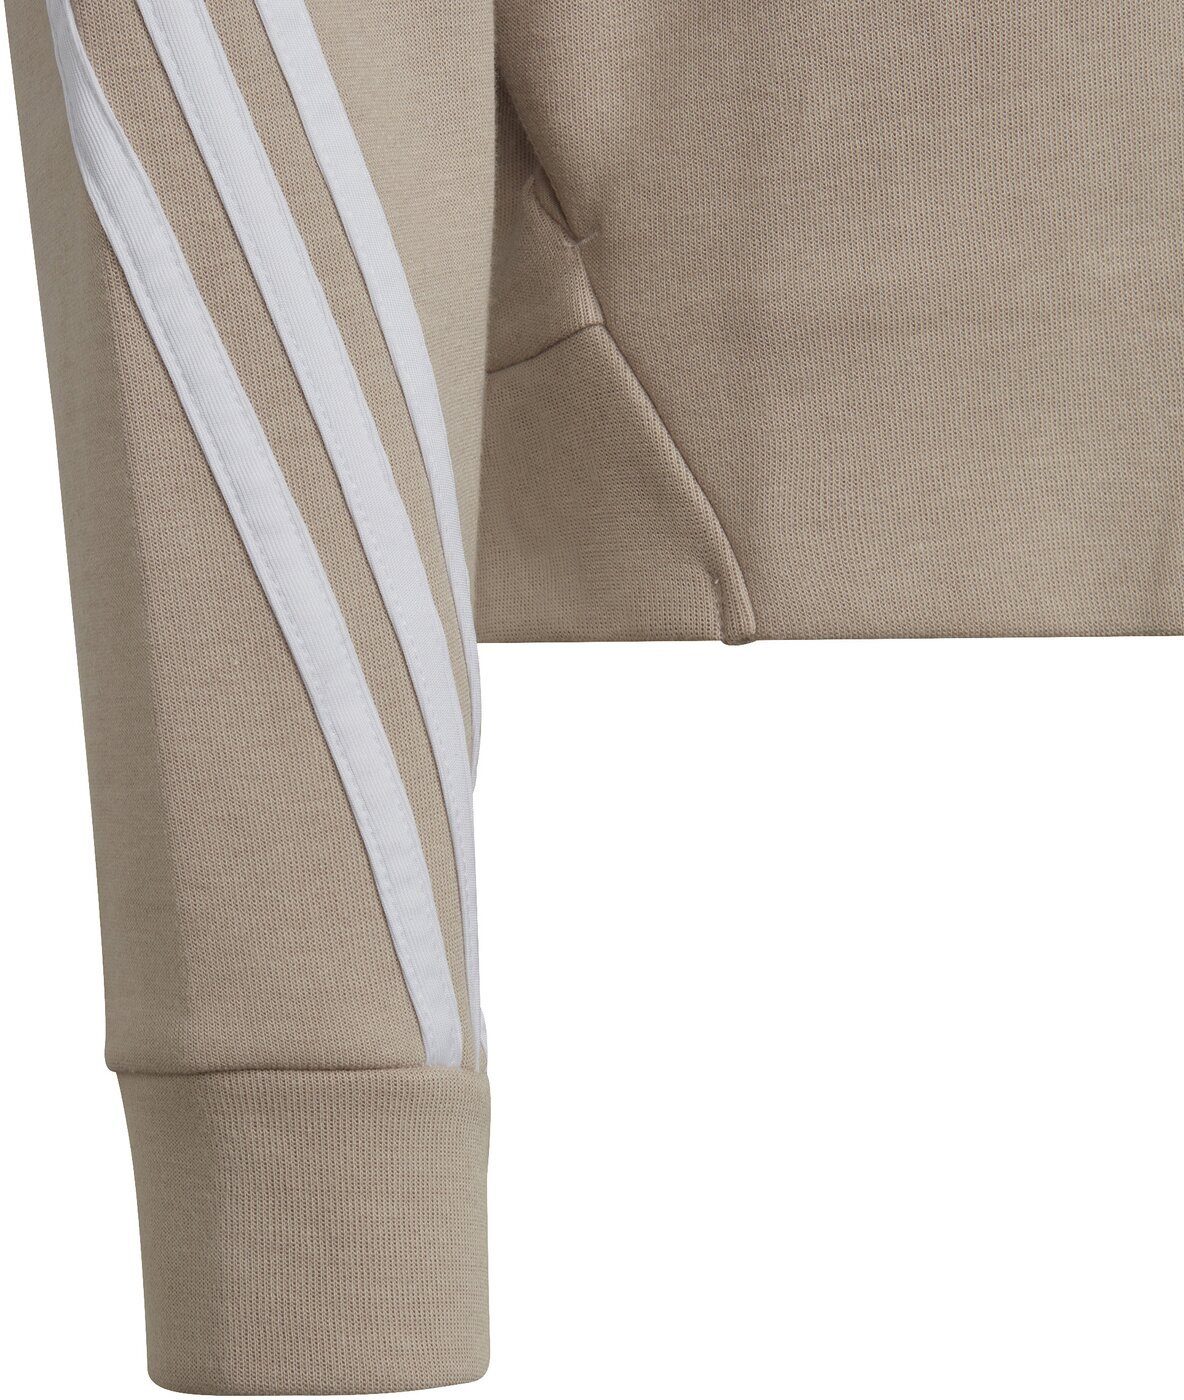 WONTAU/WHITE Sportswear G FZ Kapuzensweatjacke FI adidas 3S